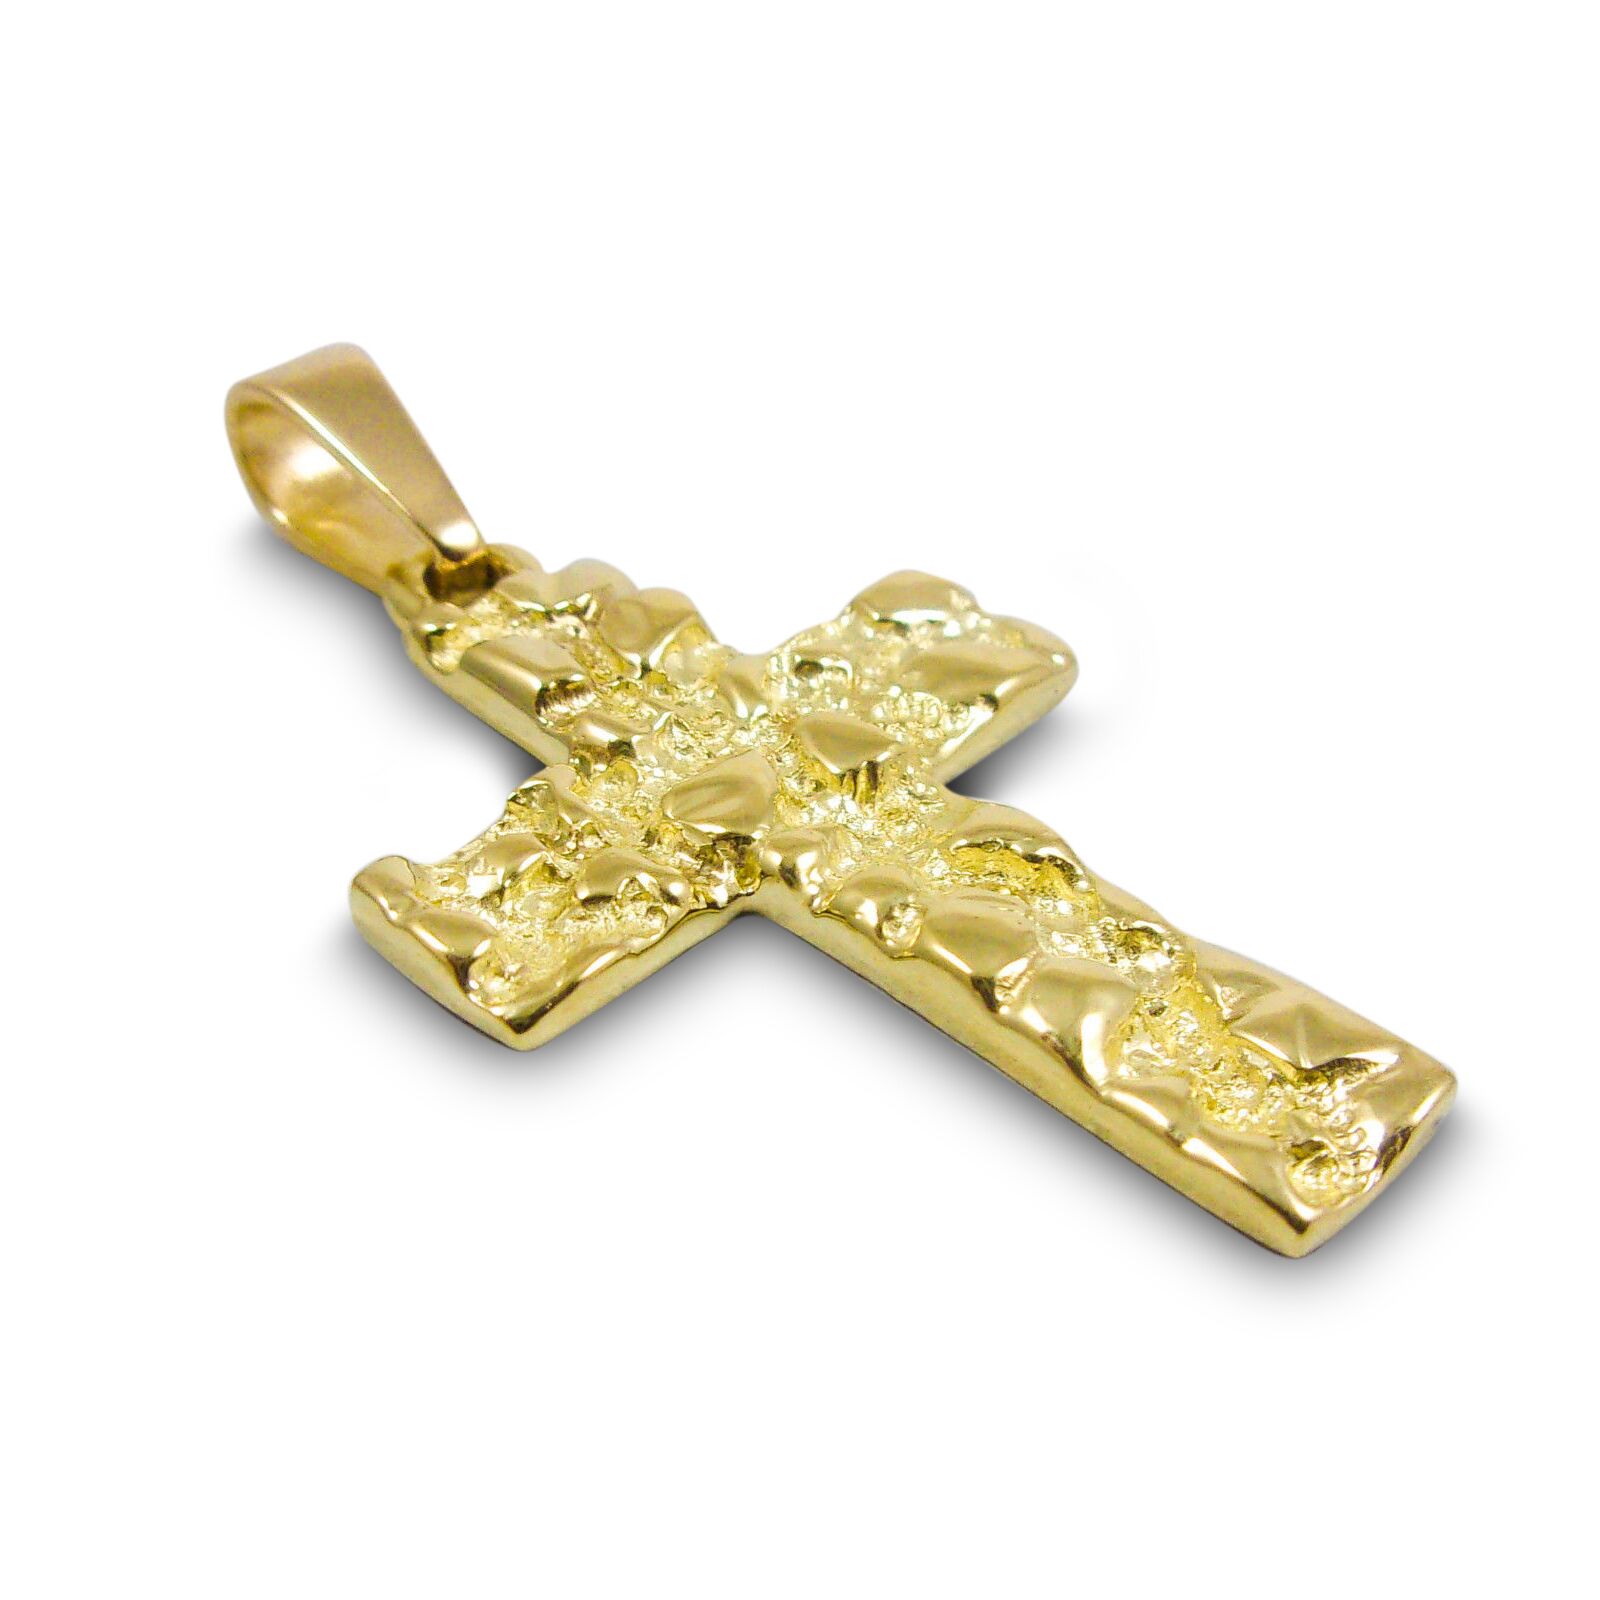 Italian Cross Pendant Necklace 17 3/4